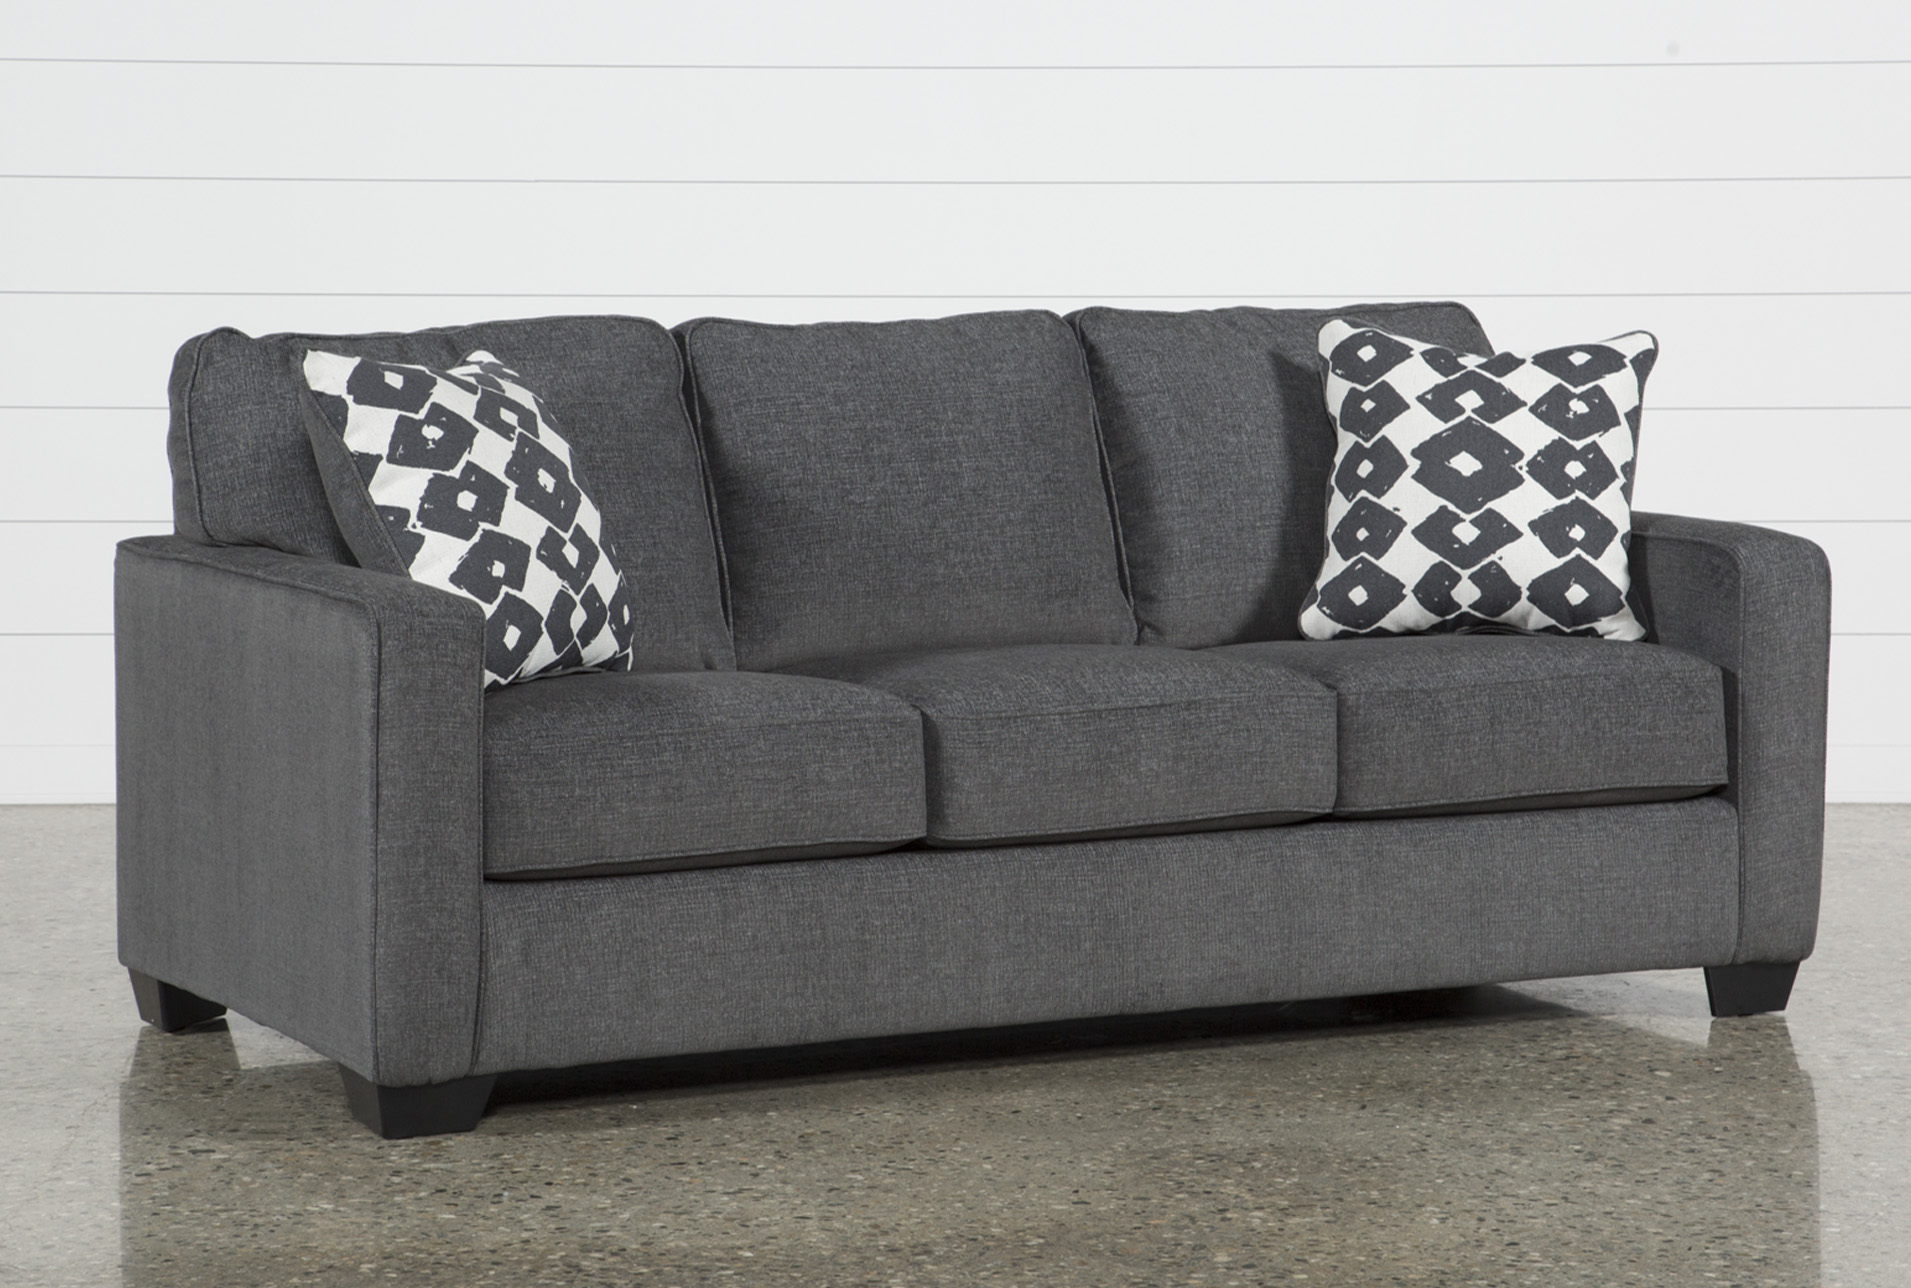 Queen Size Convertible Sofa Bed Ideas